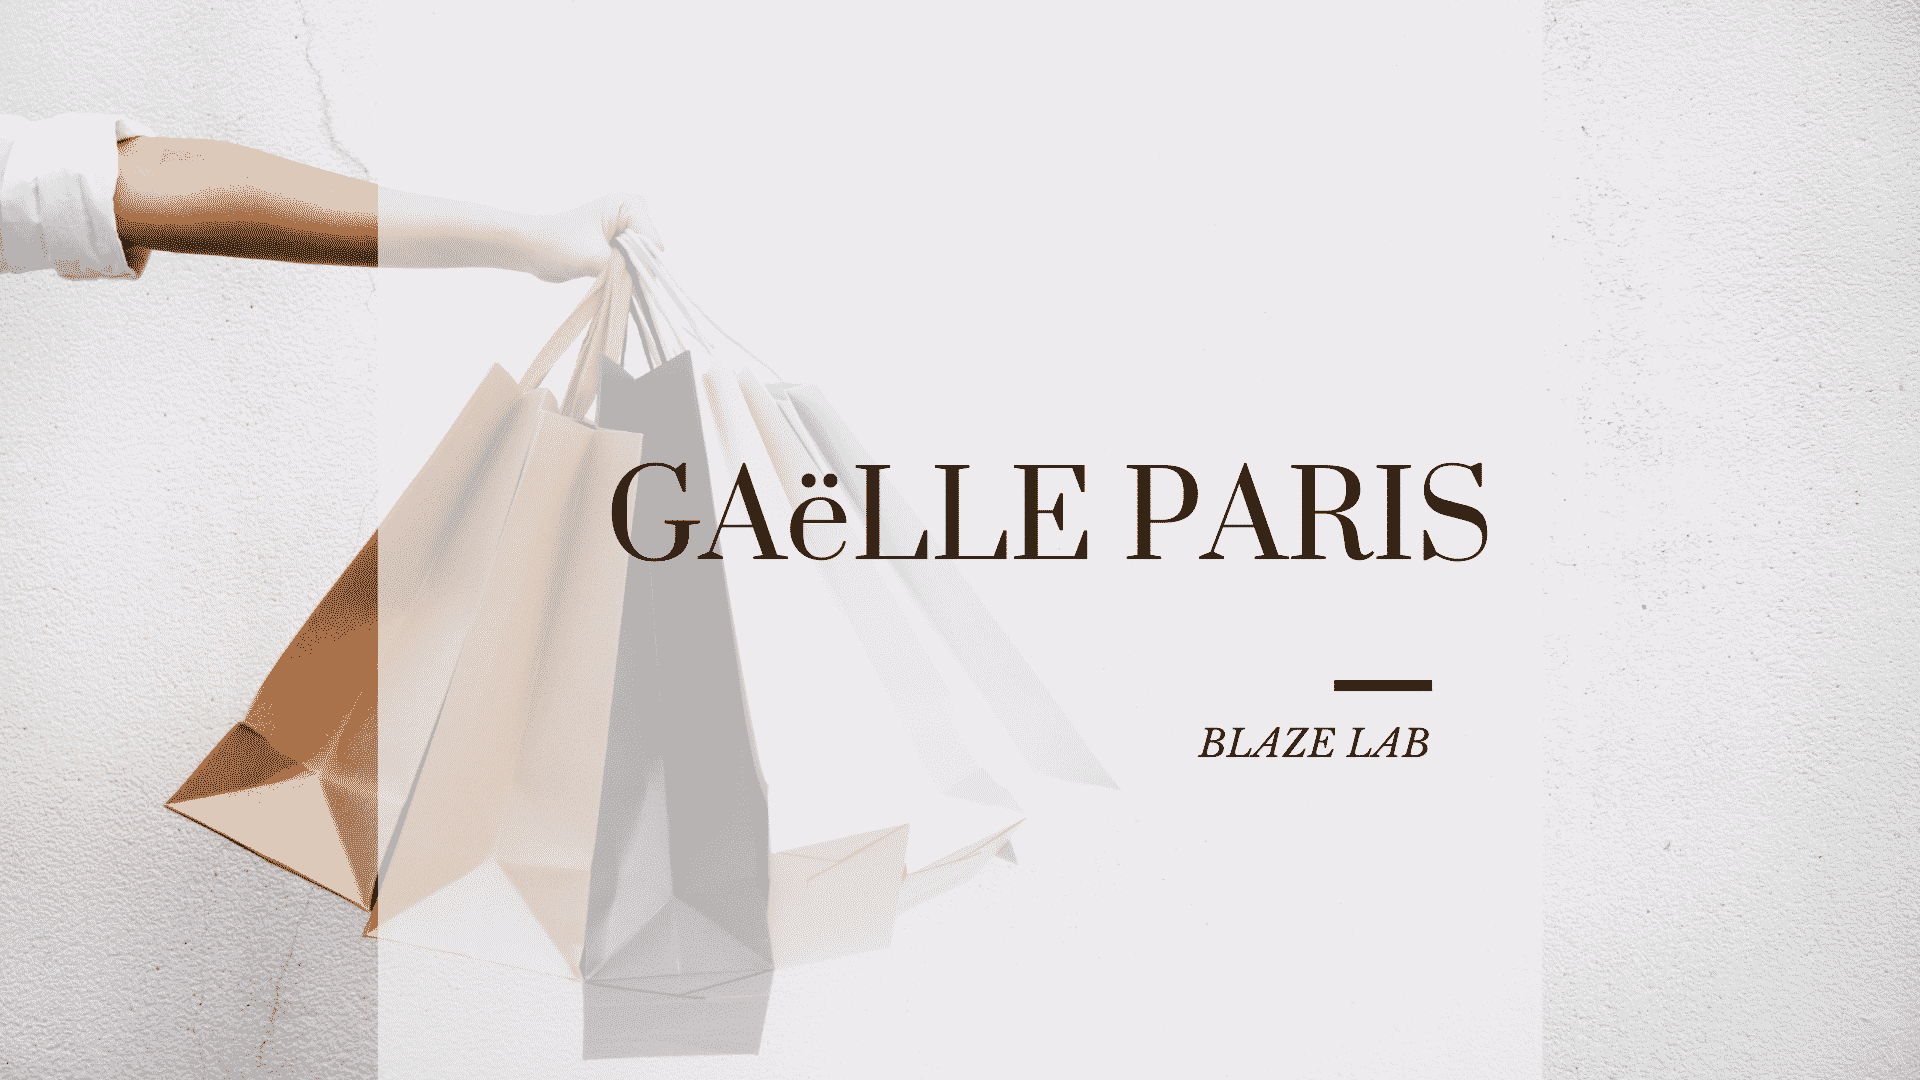 Gaelle Paris, un marchio unico e originale, ecco la sua storia